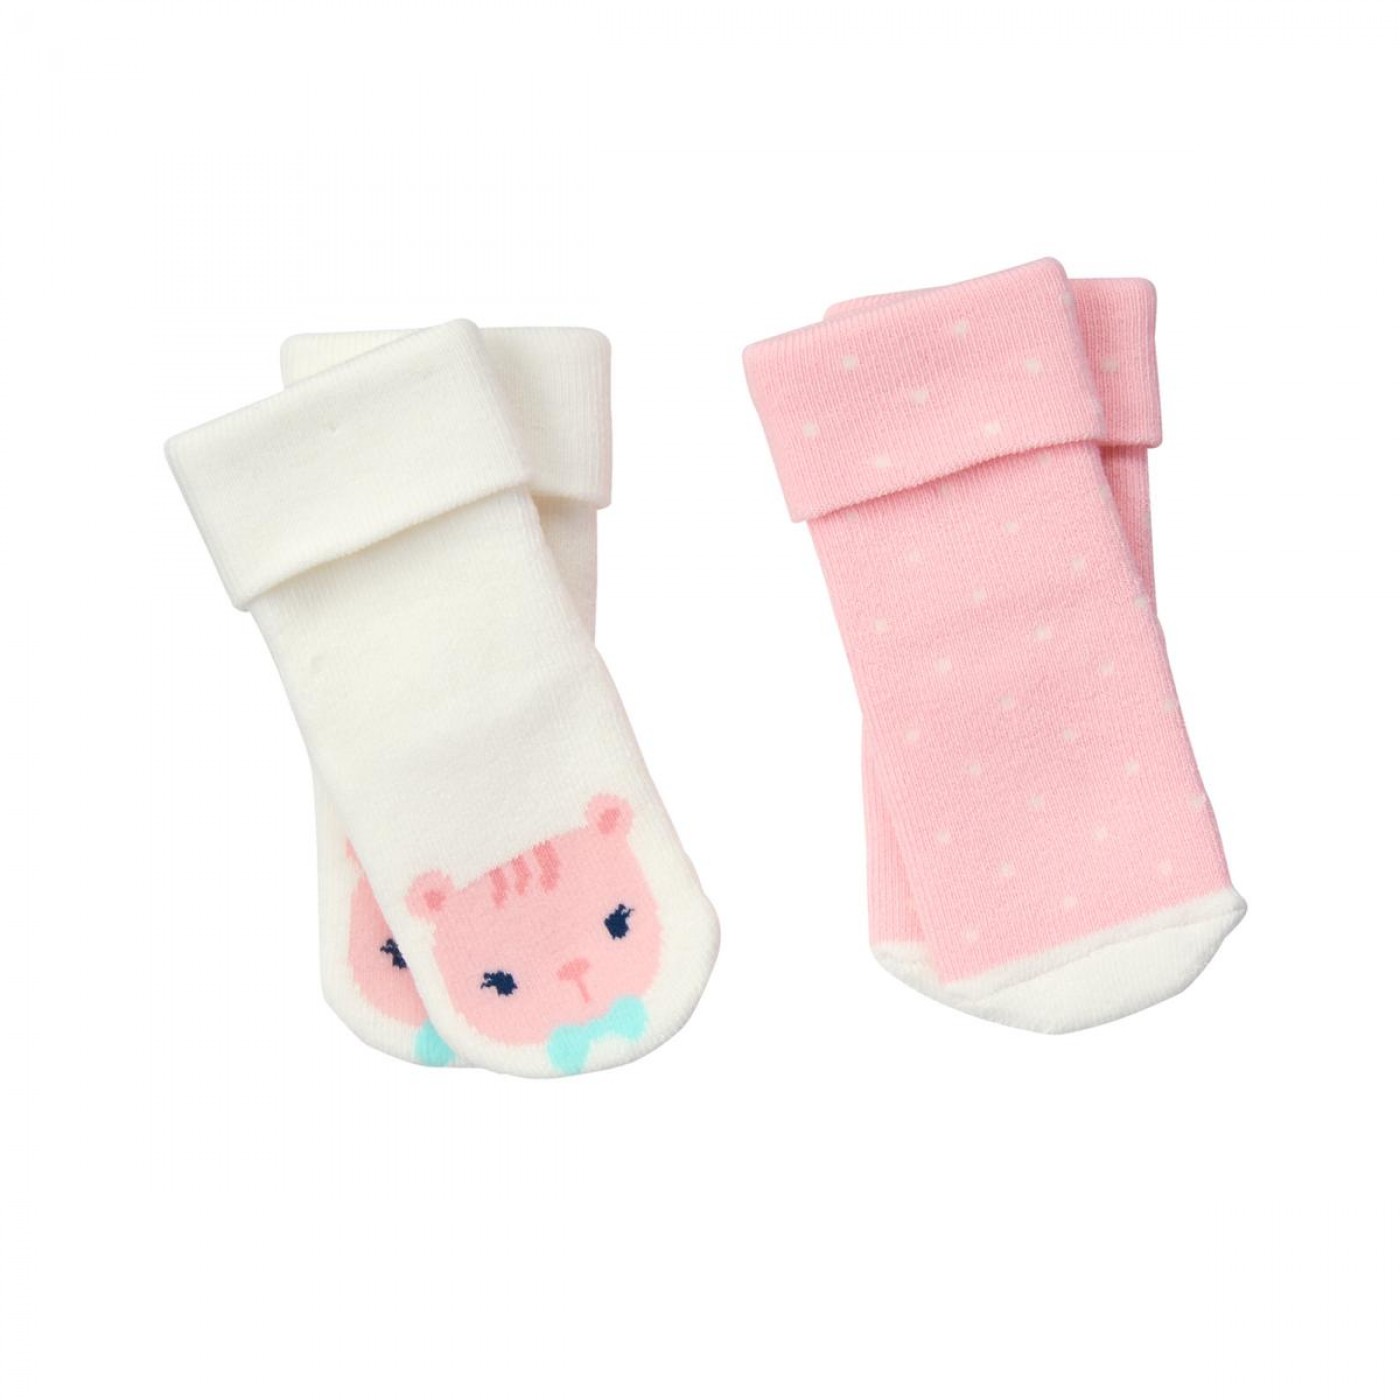 粉嫩動物襪子兩件組